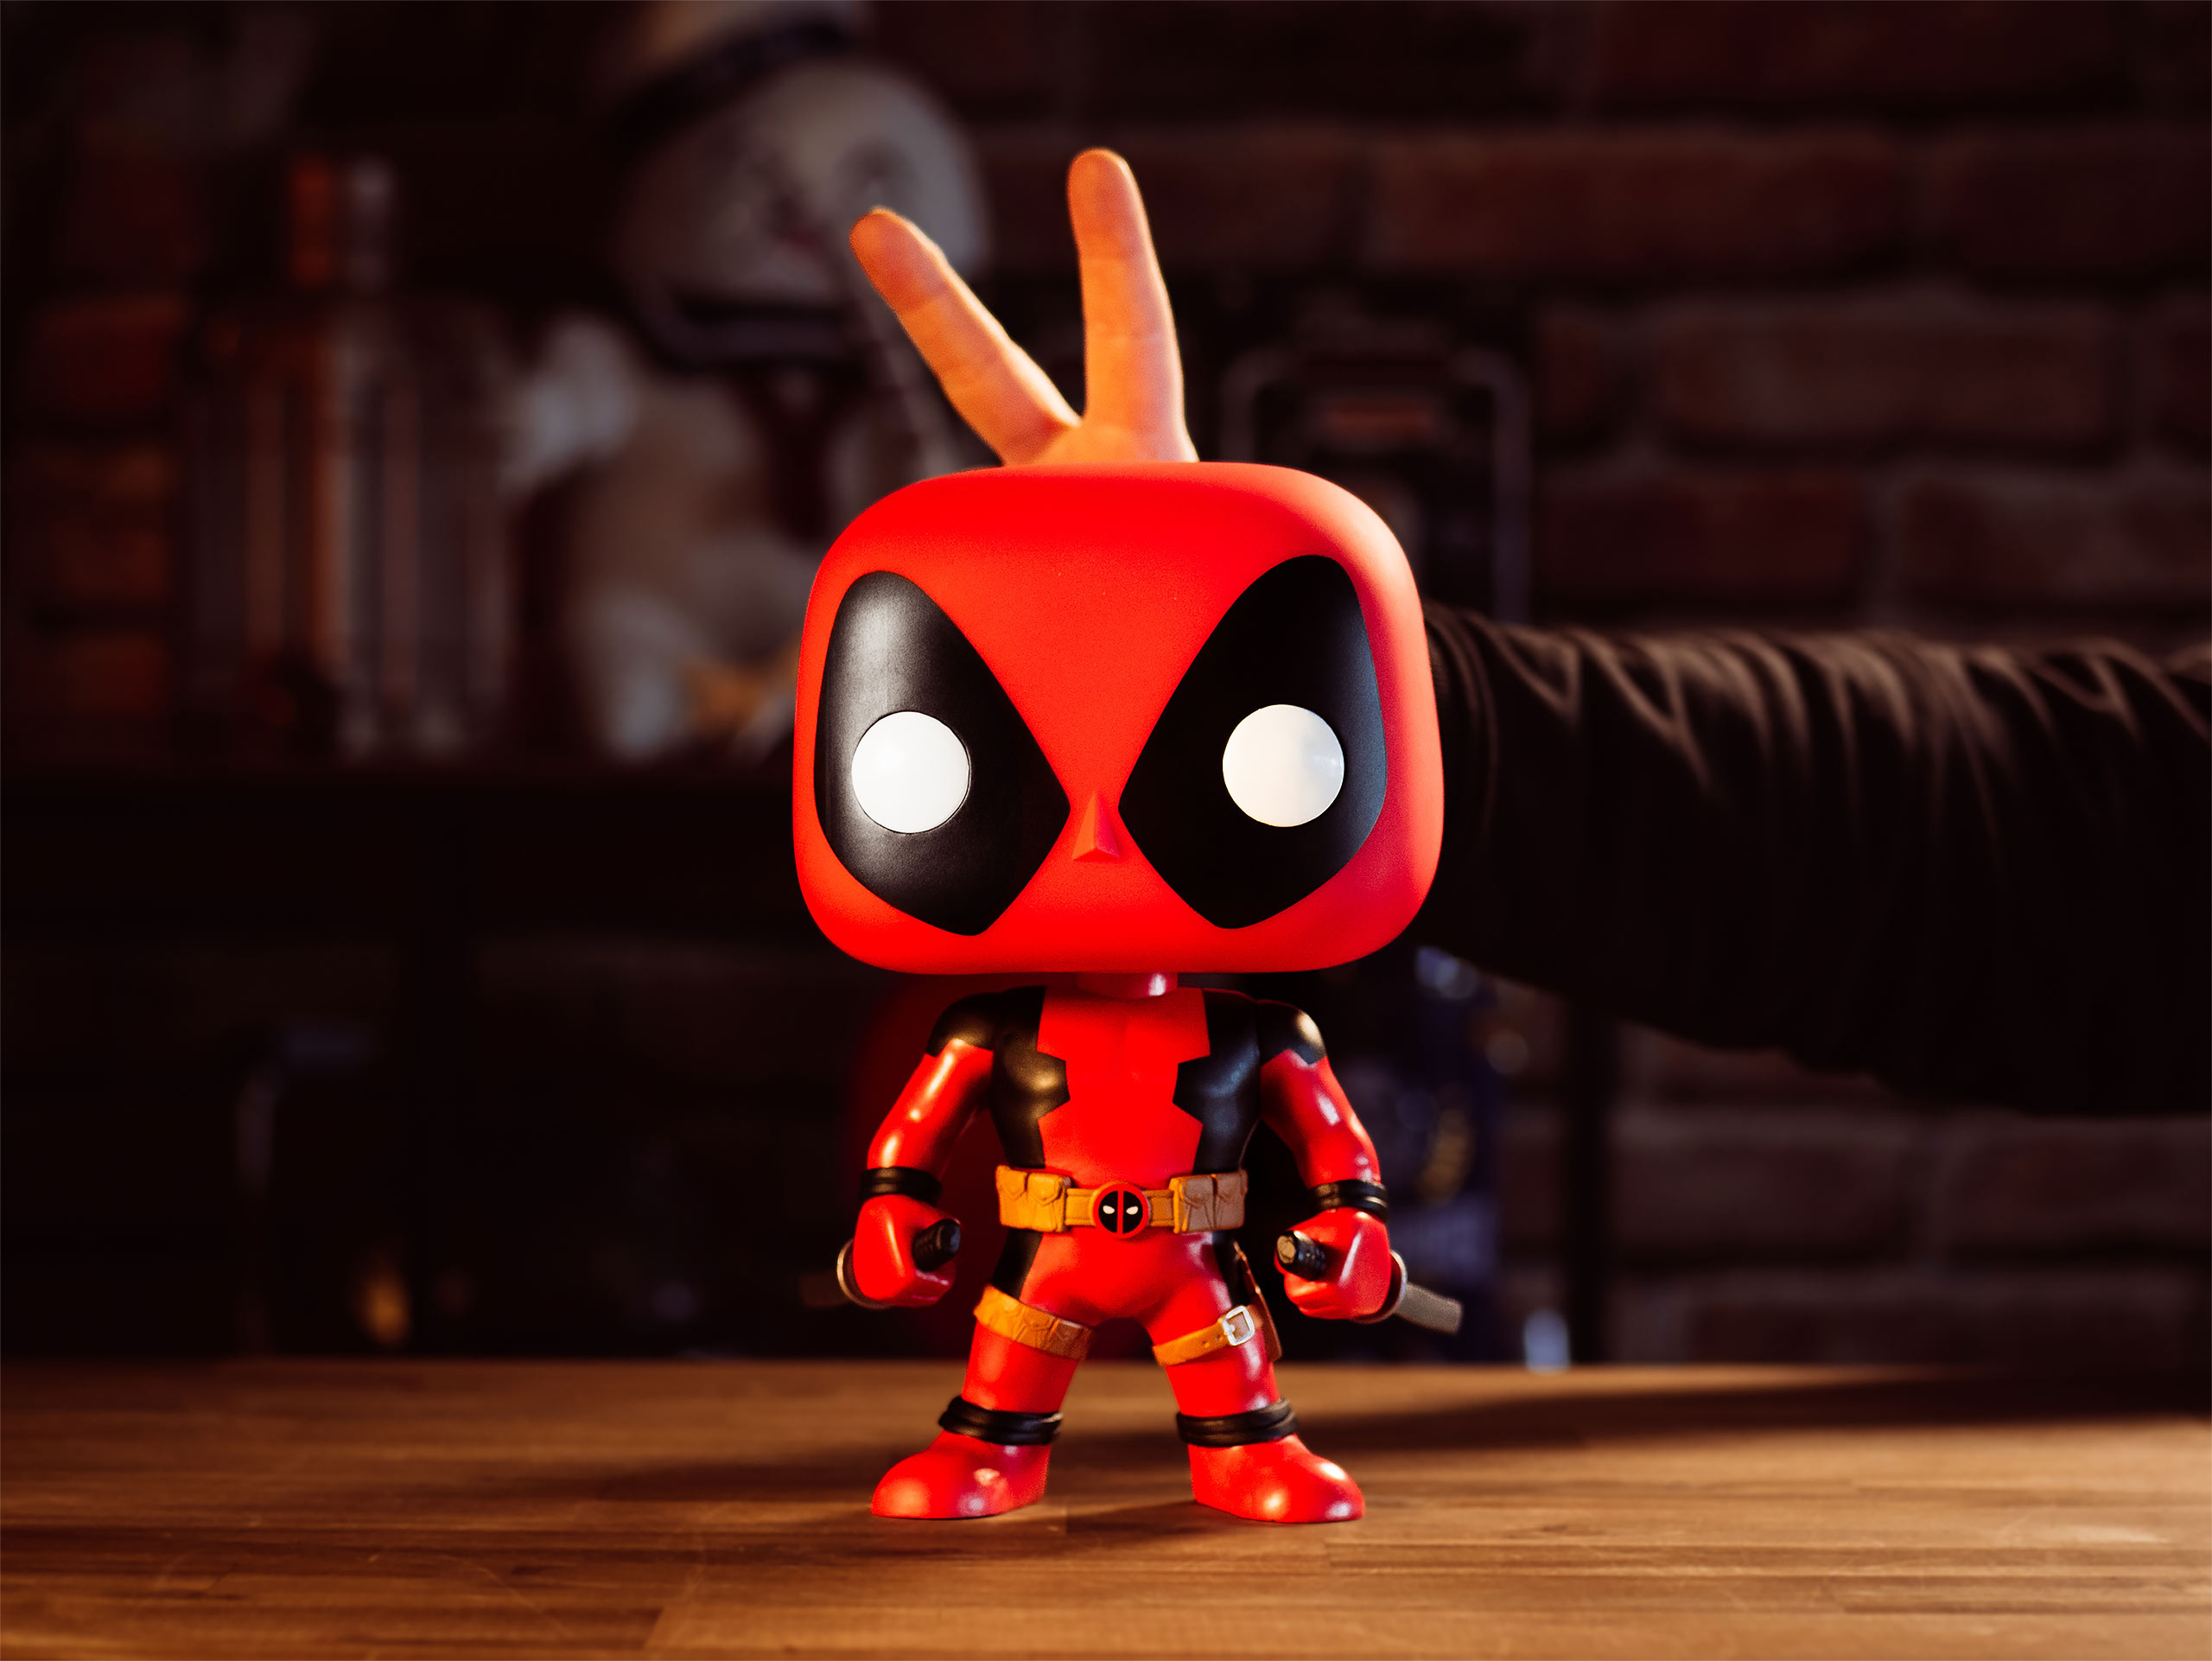 Marvel - Deadpool met zwaarden Funko Pop Figurine 23,5 cm